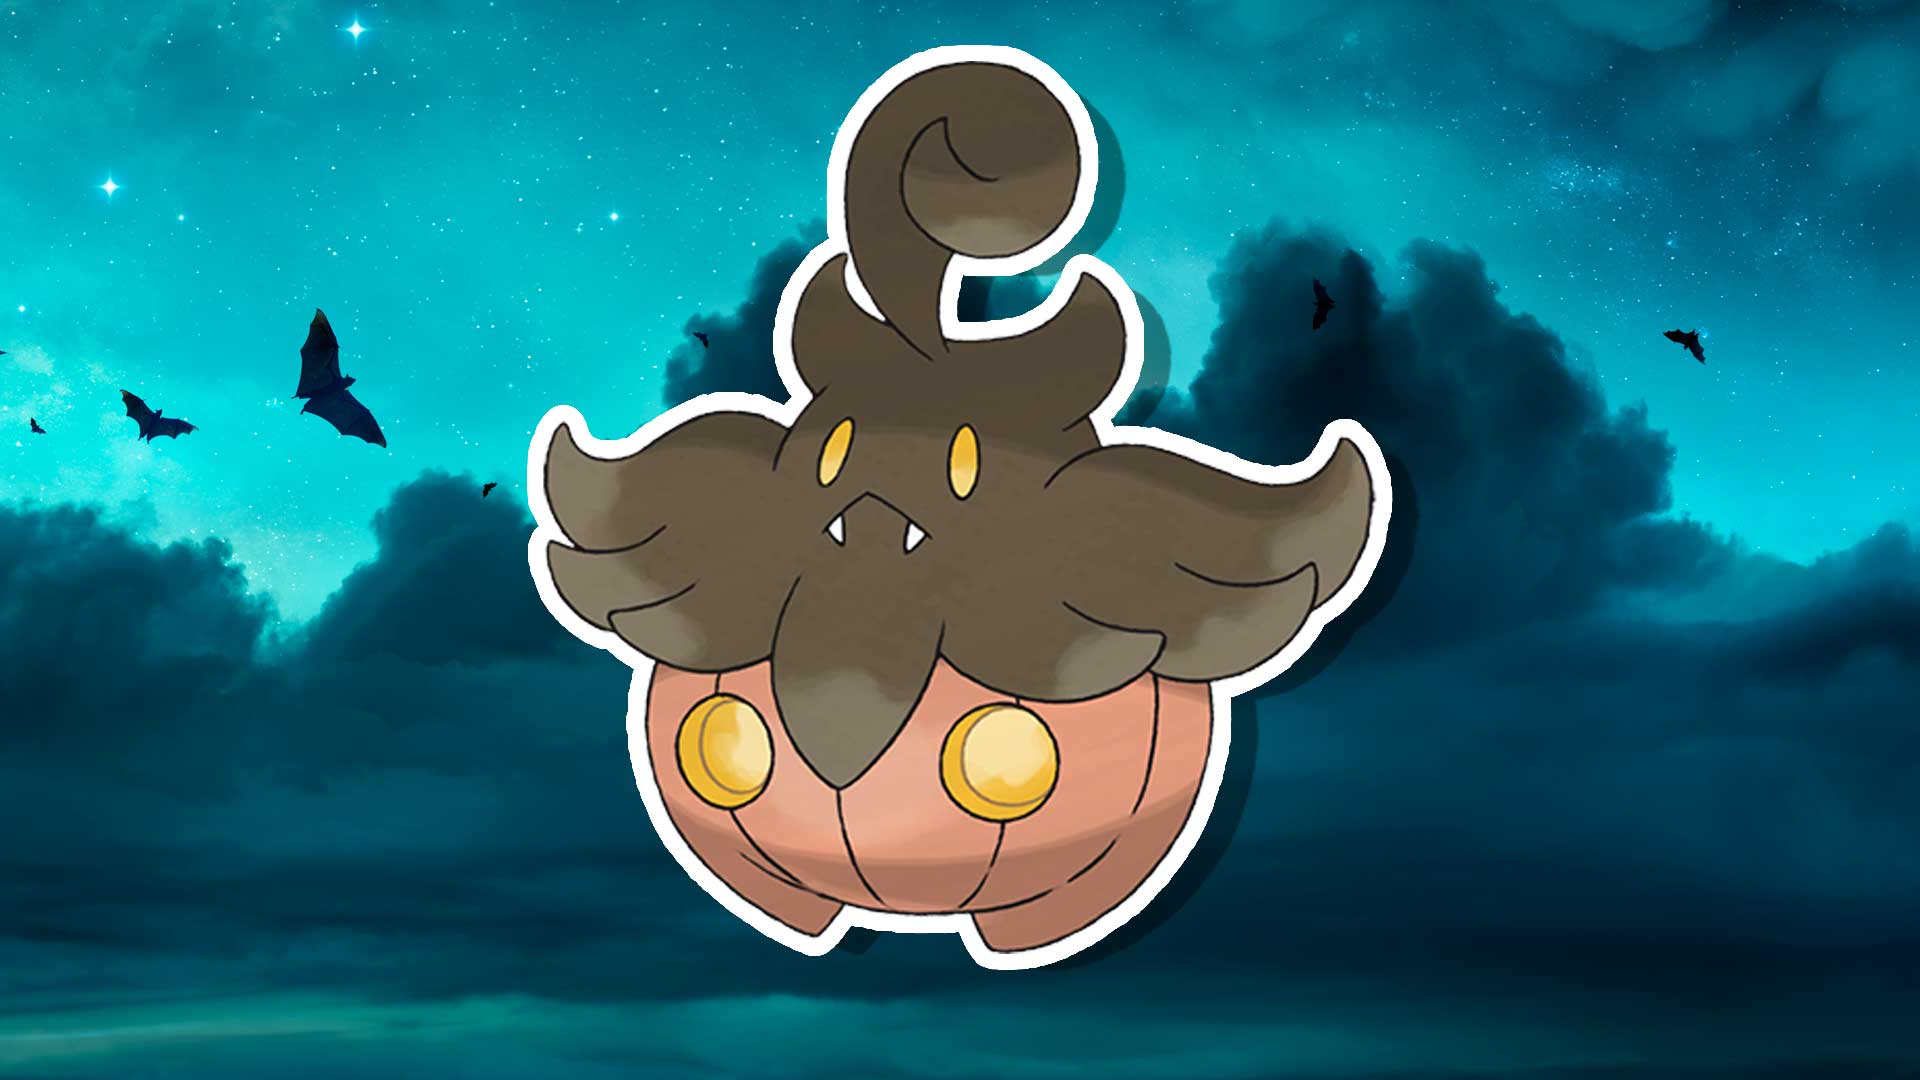 Pokemon Halloween character 